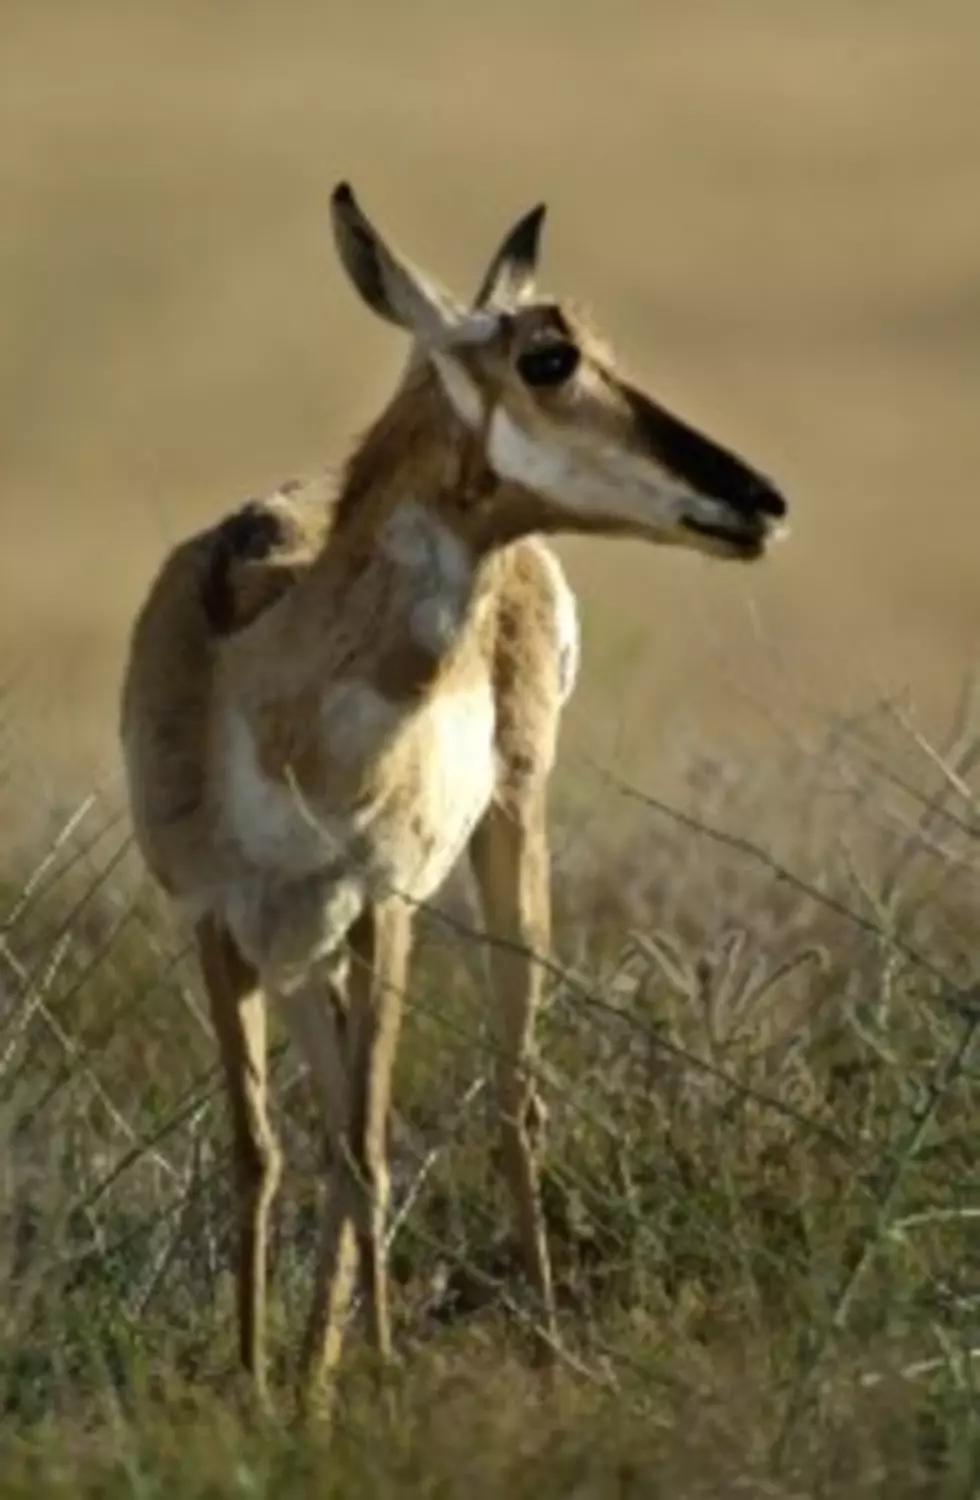 Fish and Game Seek Information on Antelope Poaching